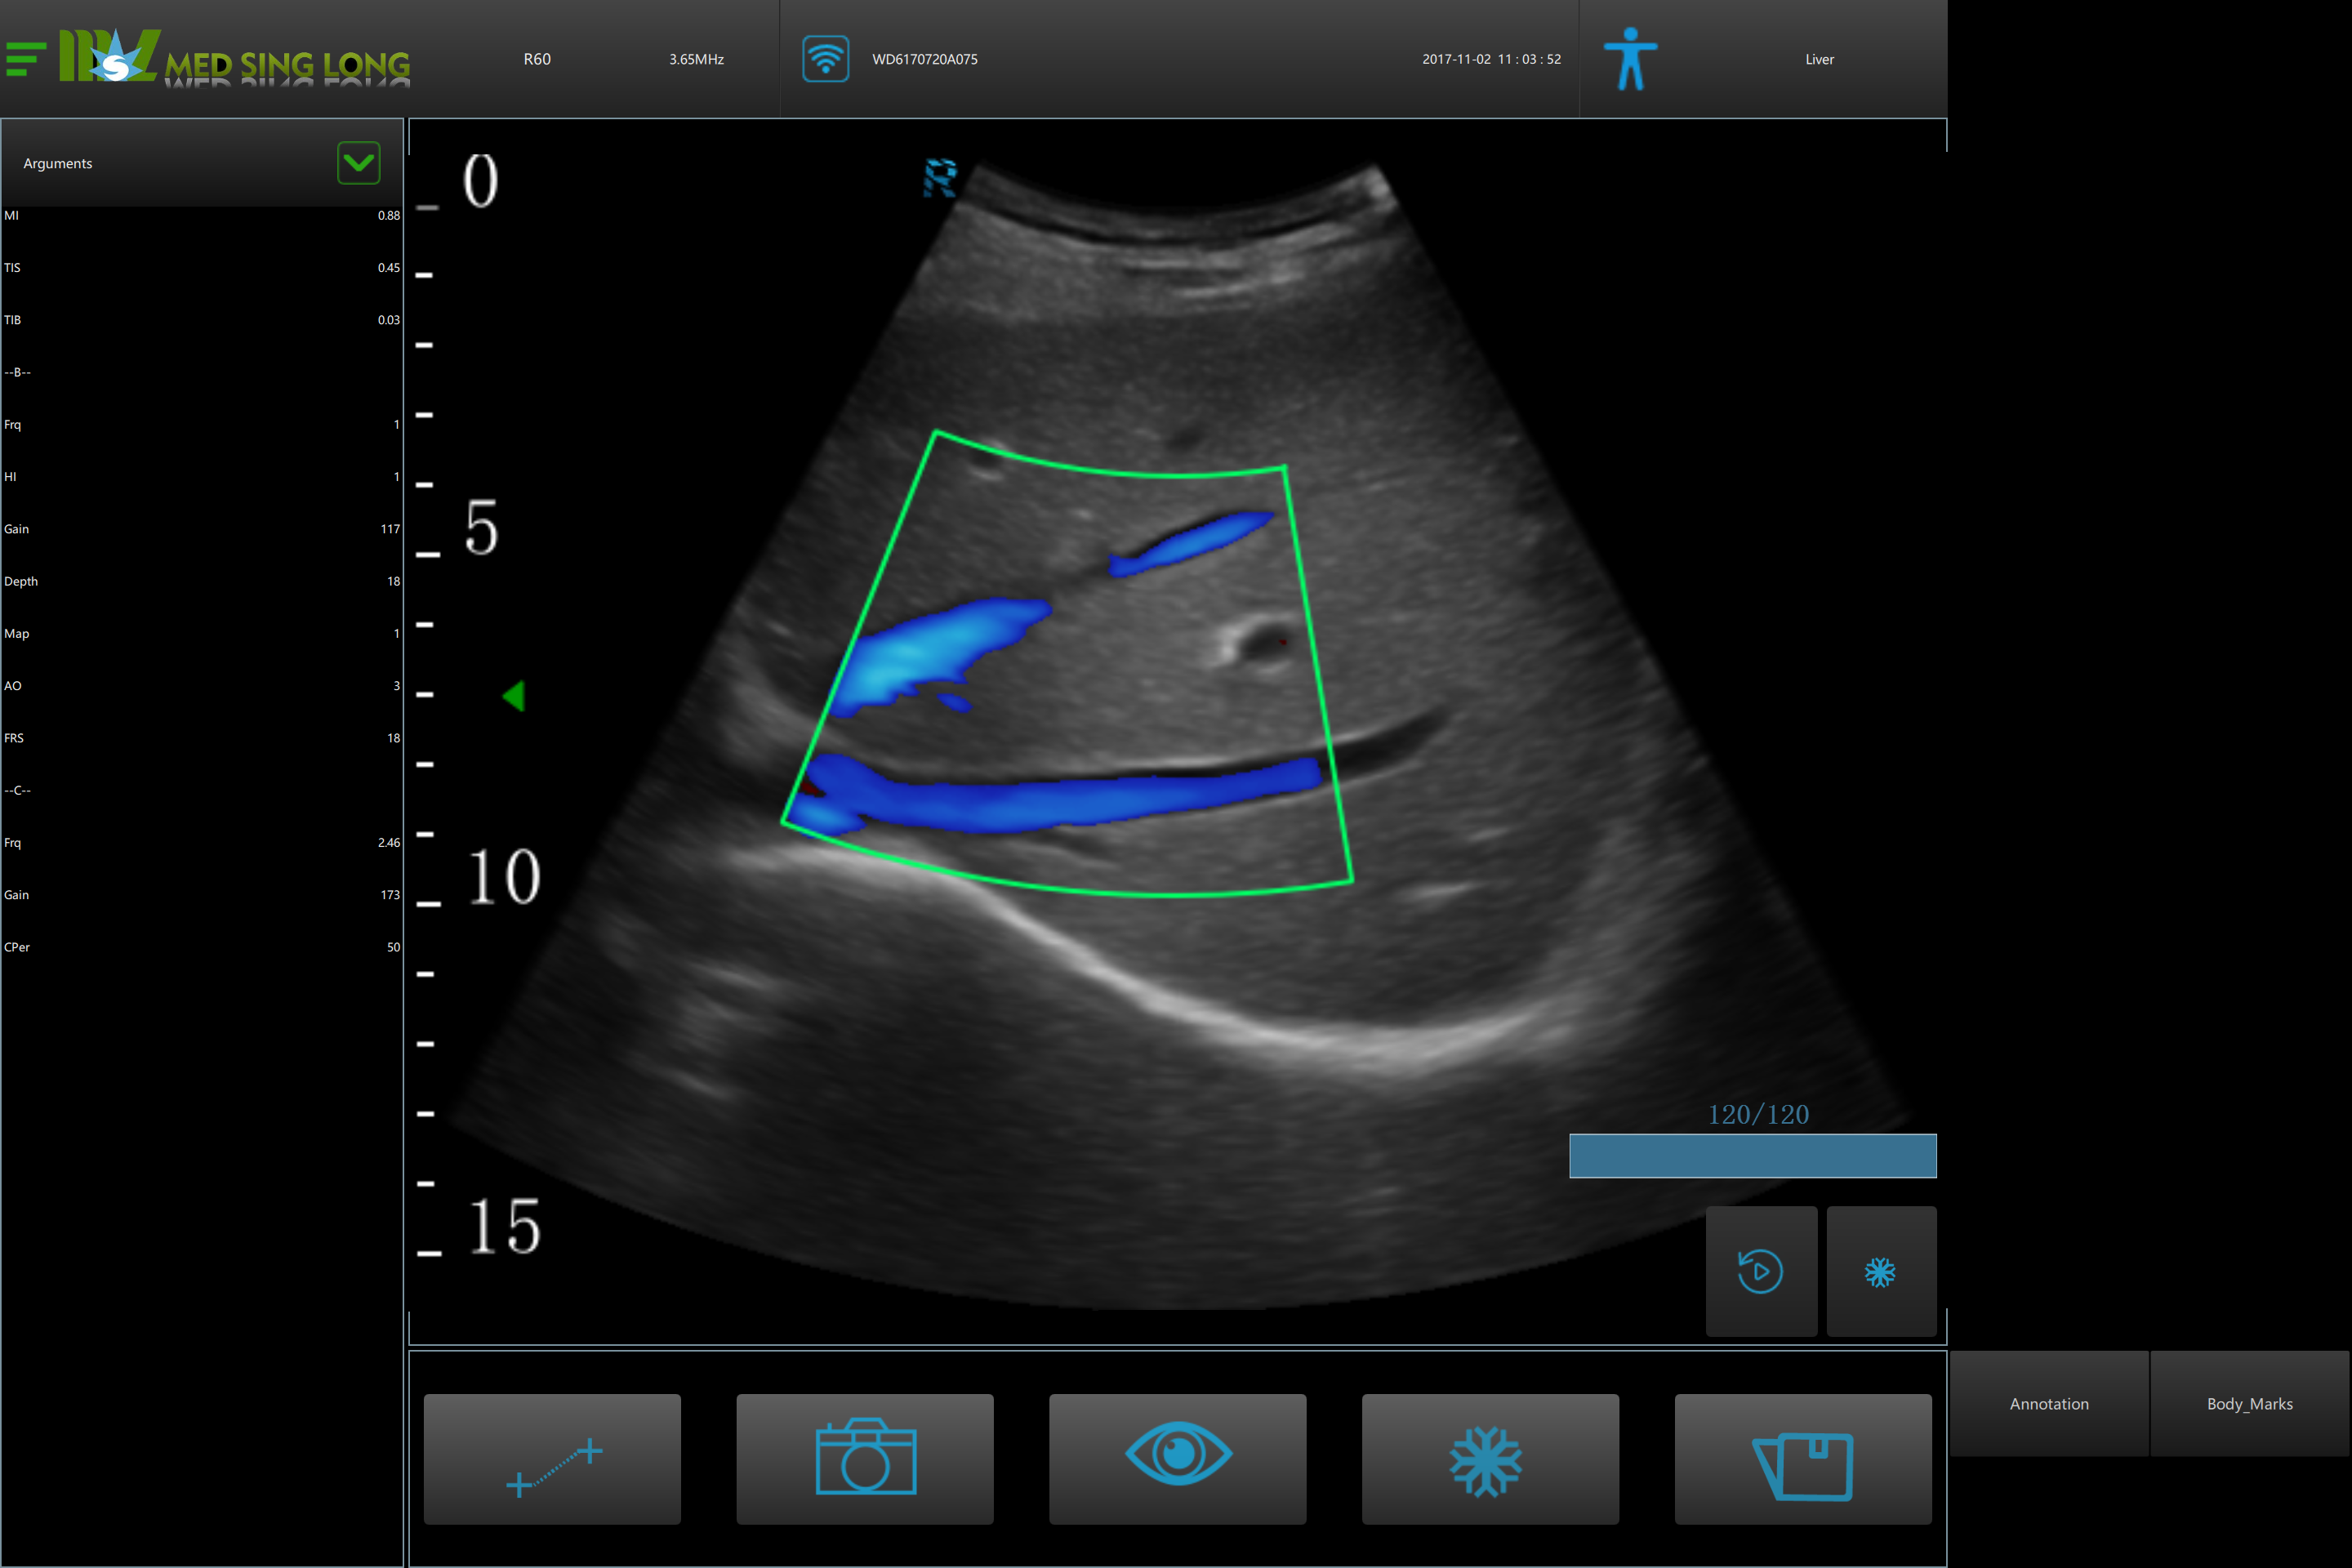 doppler ultrasound